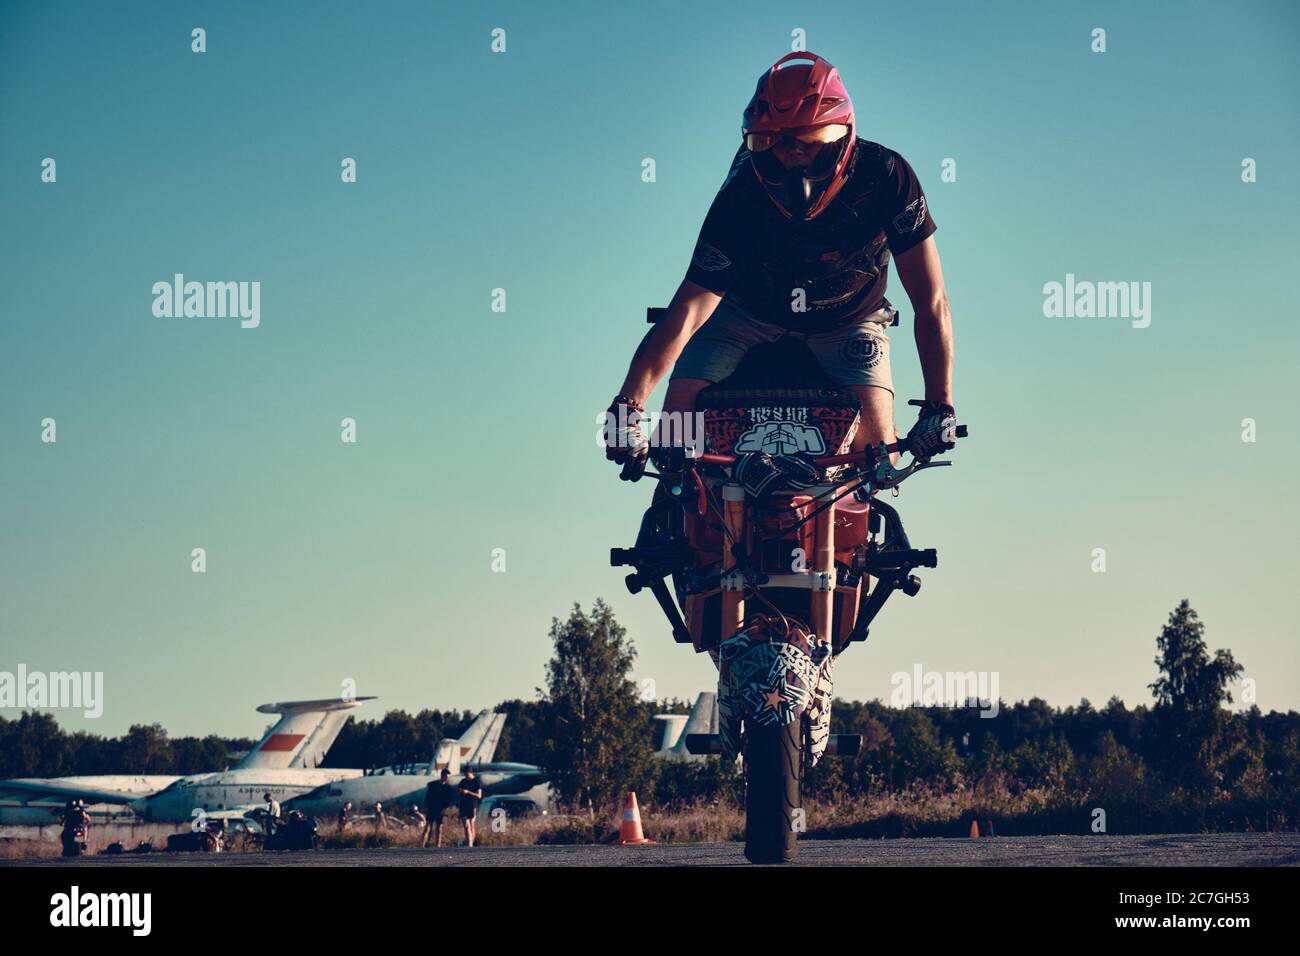 Moscou, Russie - 17 juillet 2020 : un pilote moto fait un tour sur sa moto. Motocycliste faisant de l'arrêt un cascades difficile et dangereux sur sa moto Banque D'Images